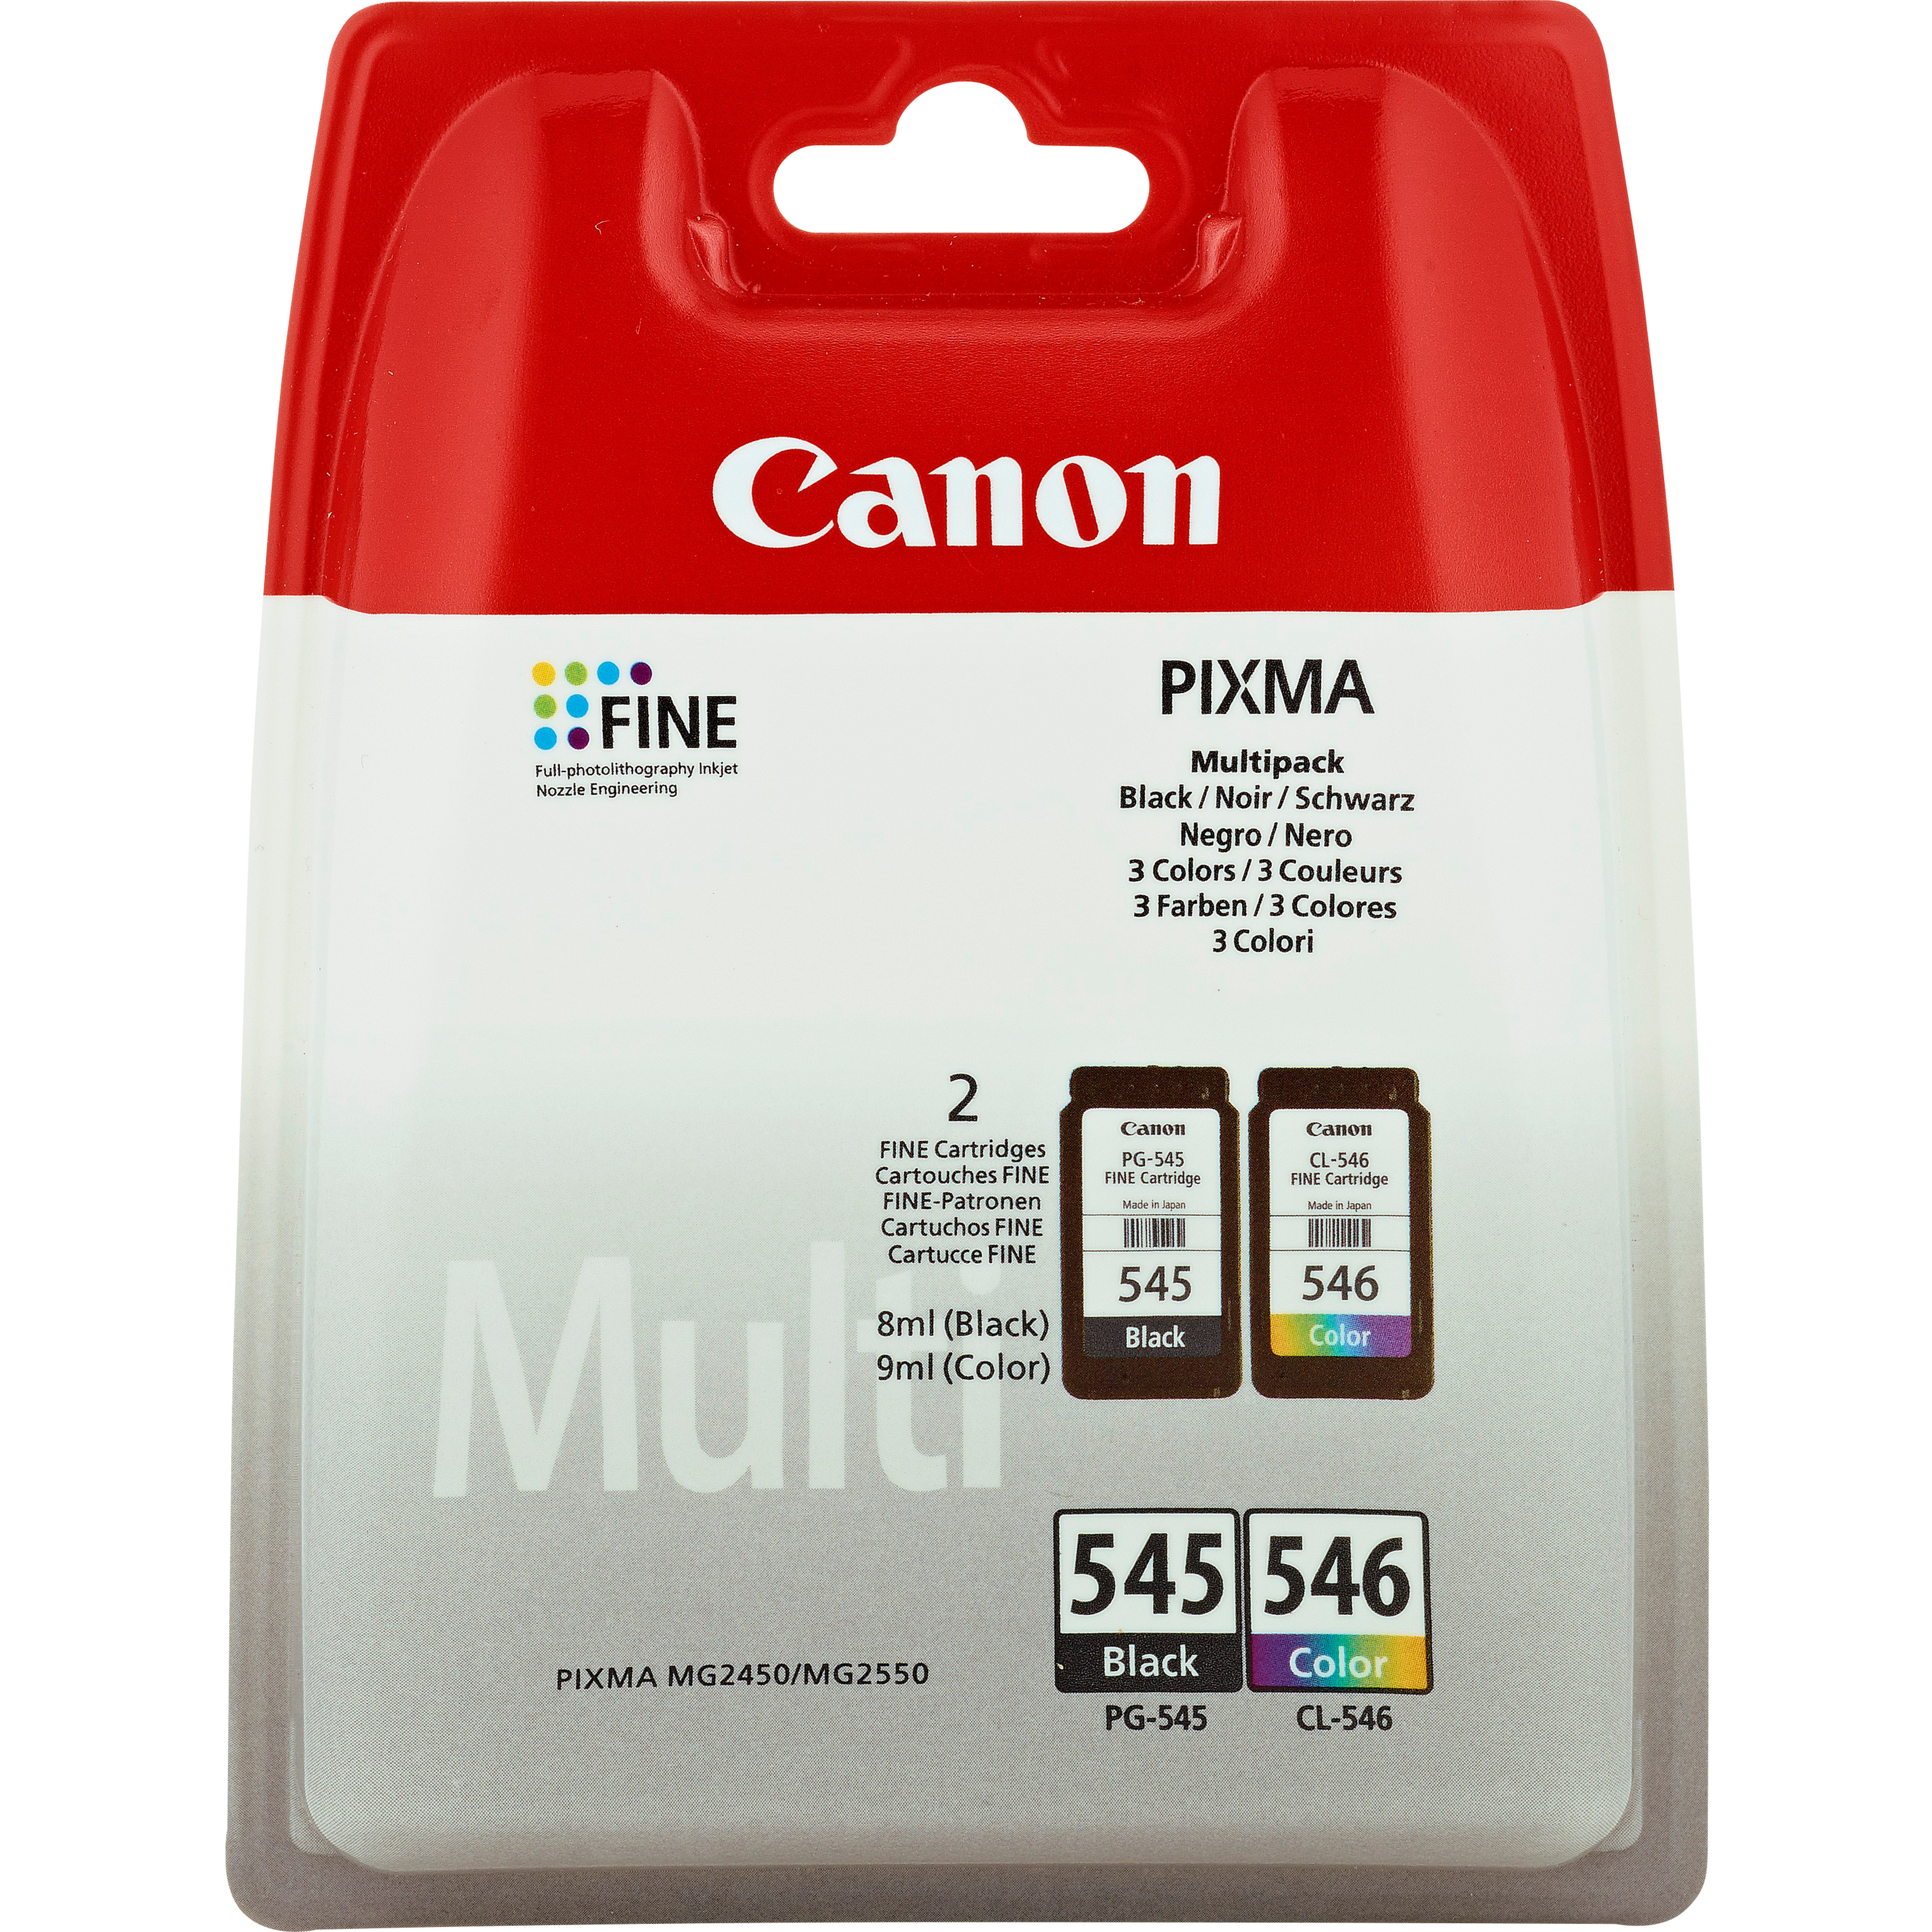 Multifonction 4-en-1 Canon PIXMA TR4550, Noir dans Fin de Série